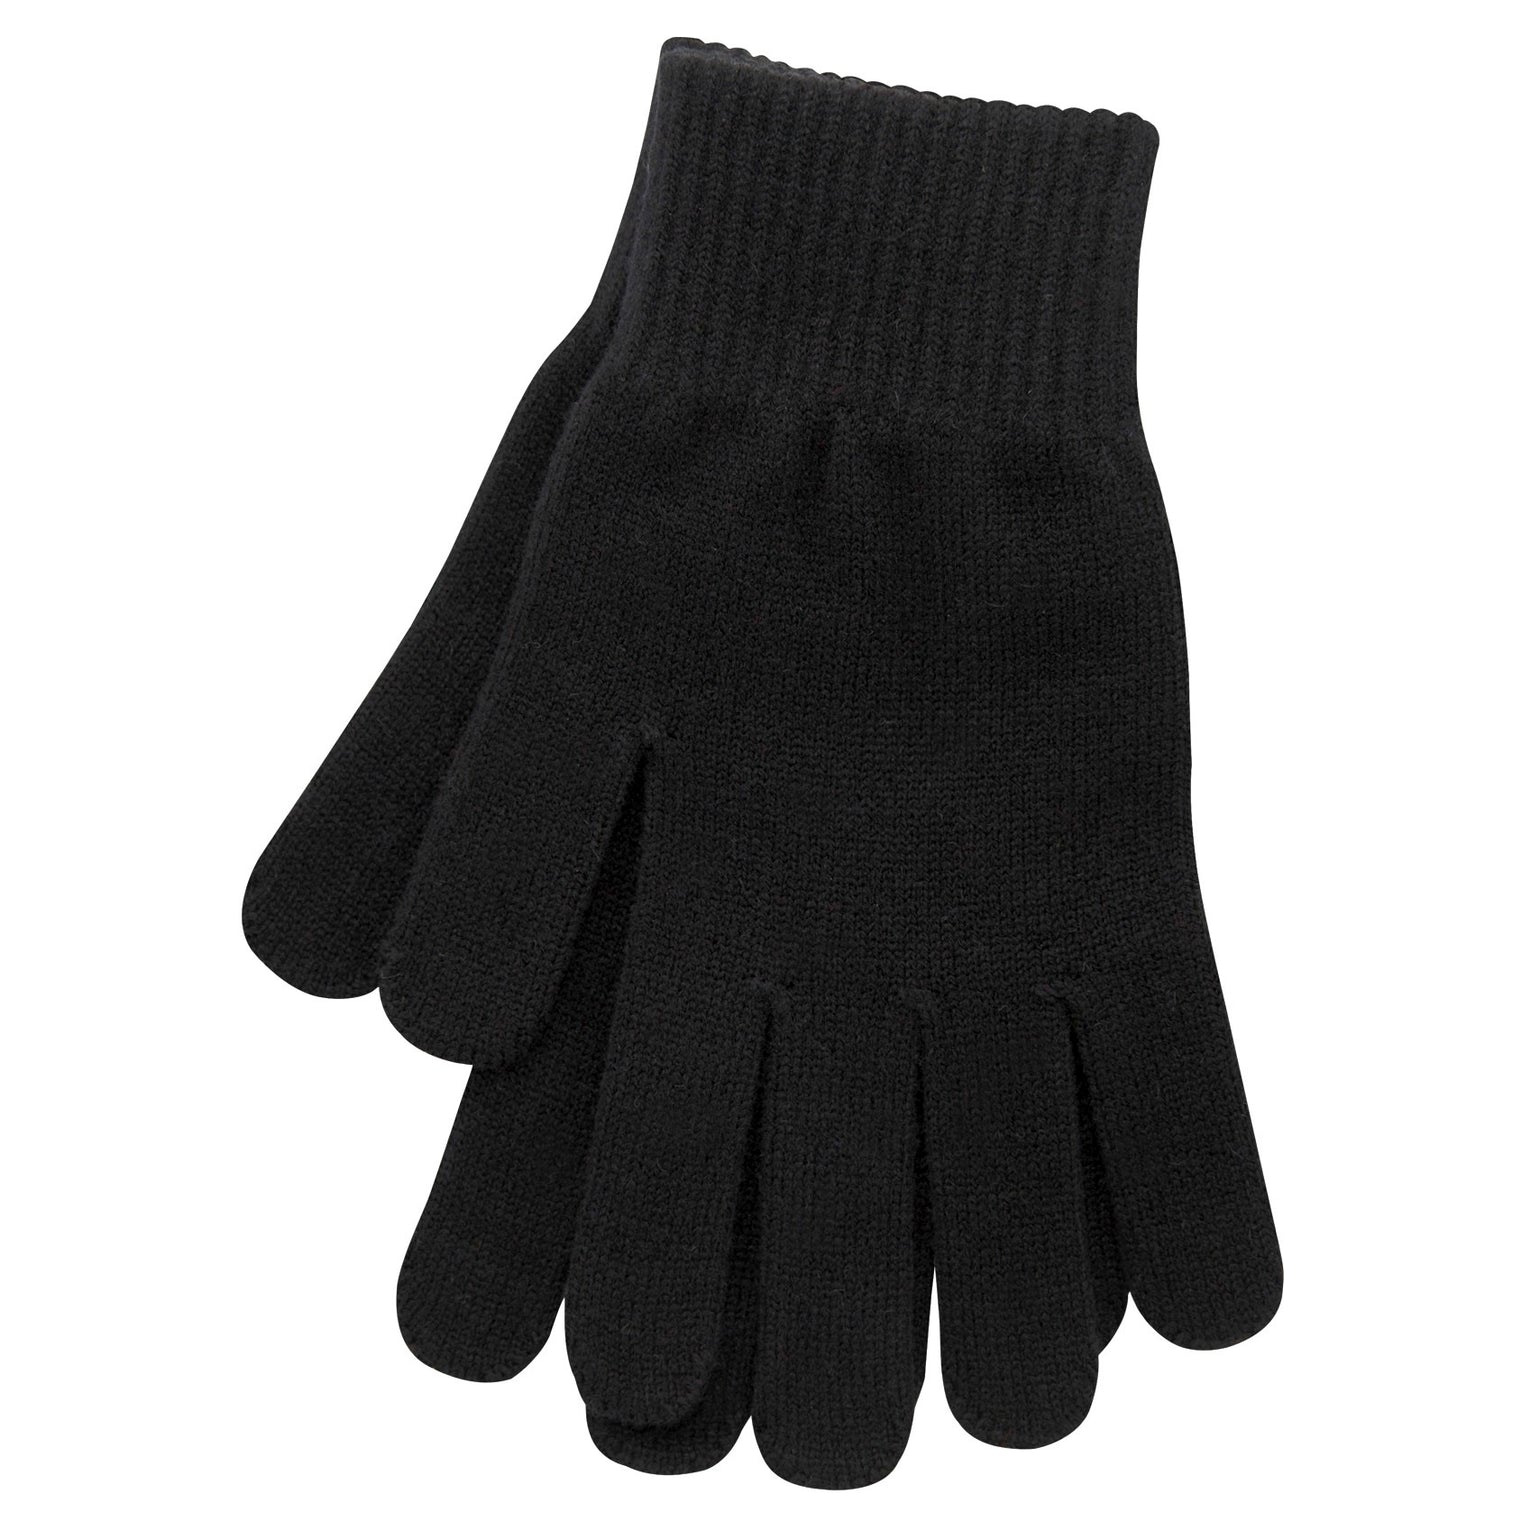 TouchScreen Glove